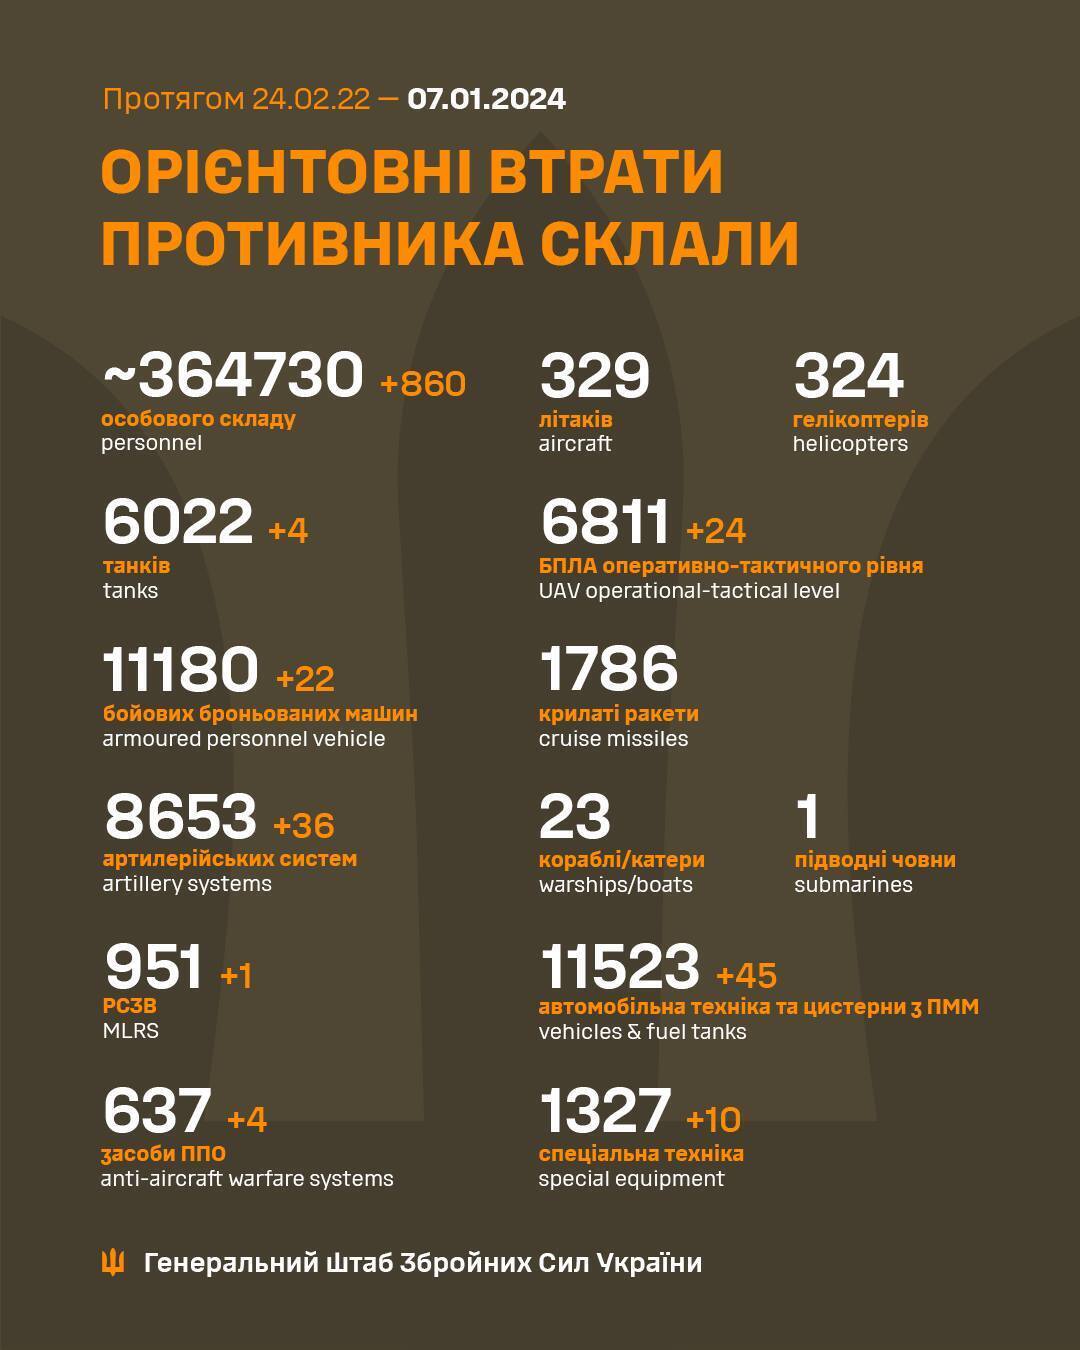 ВСУ за сутки обезвредили 860 оккупантов и 36 артиллерийских систем врага